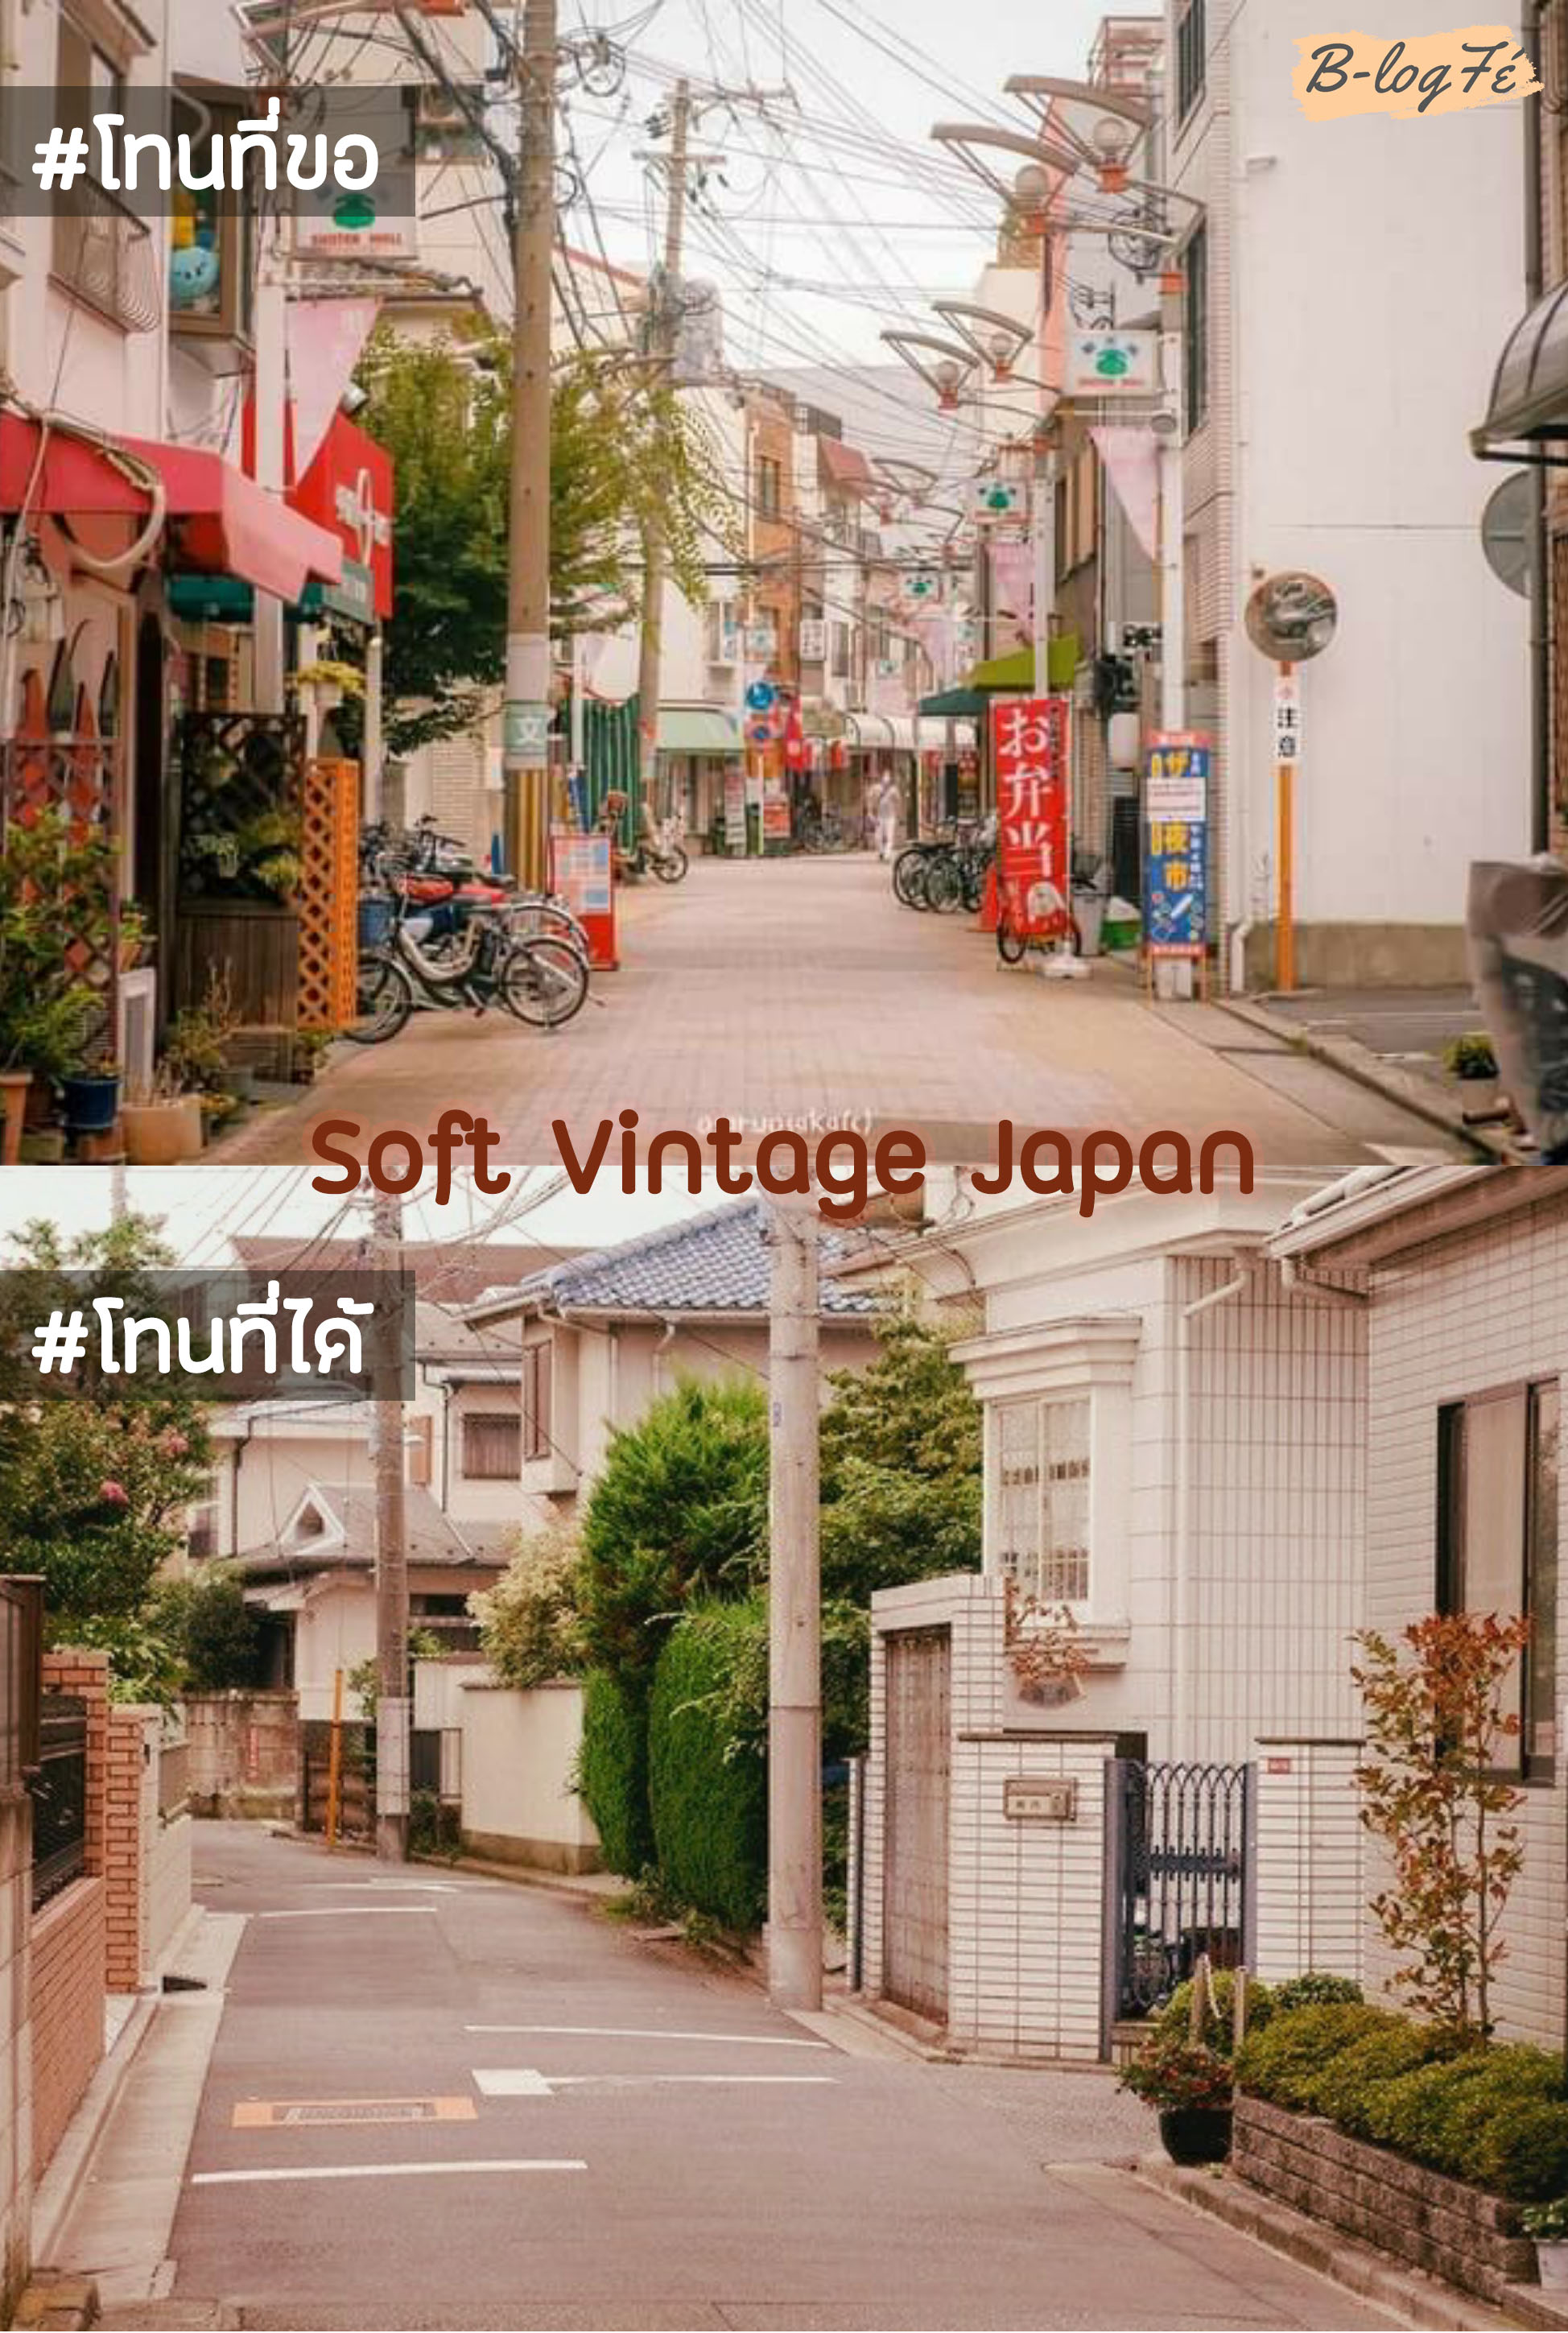 แต่งรูปโทนญี่ปุ่นซอฟต์วินเทจ soft vintage | Snapseed